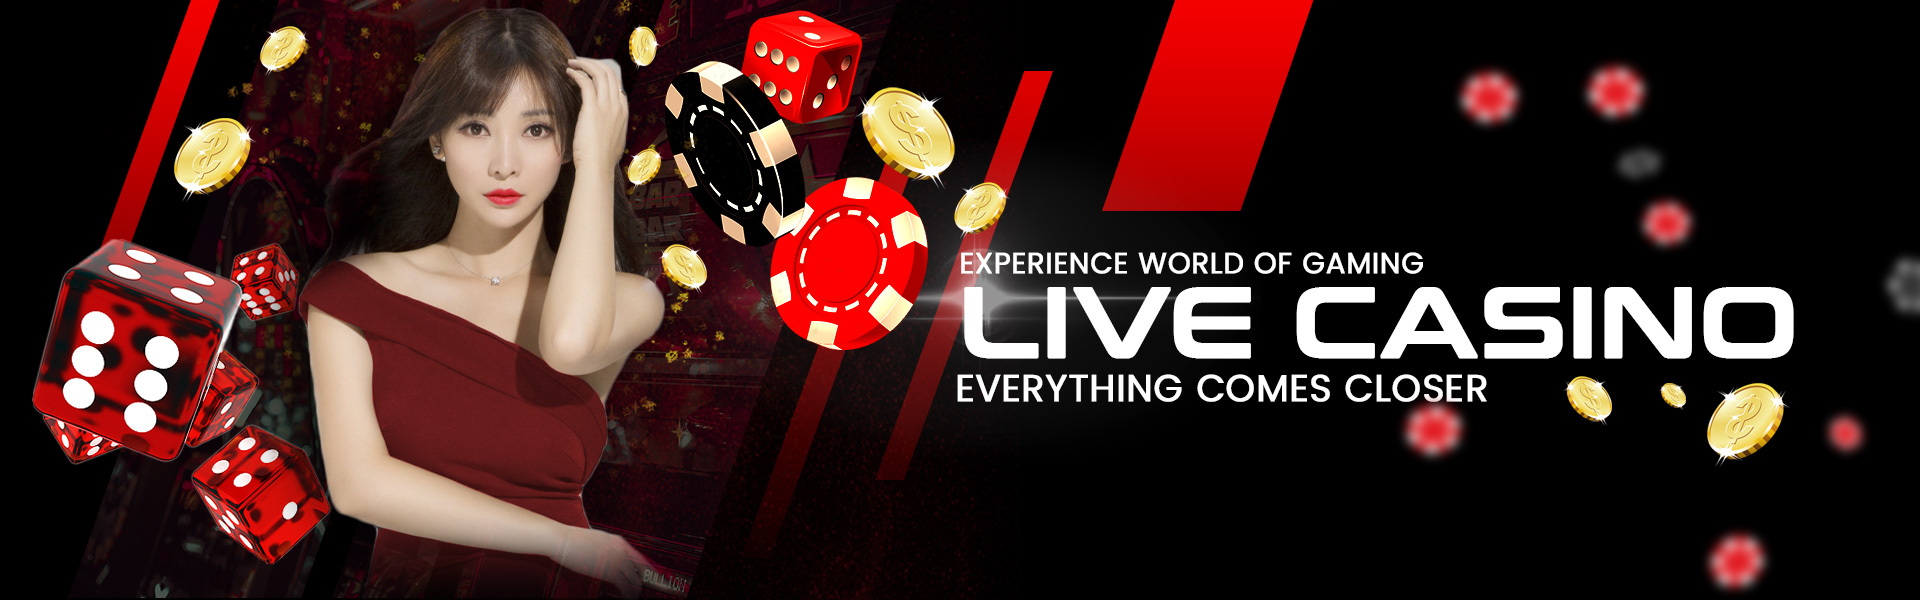 Slots of Vegas Casino | Casino Bonus Codes for 